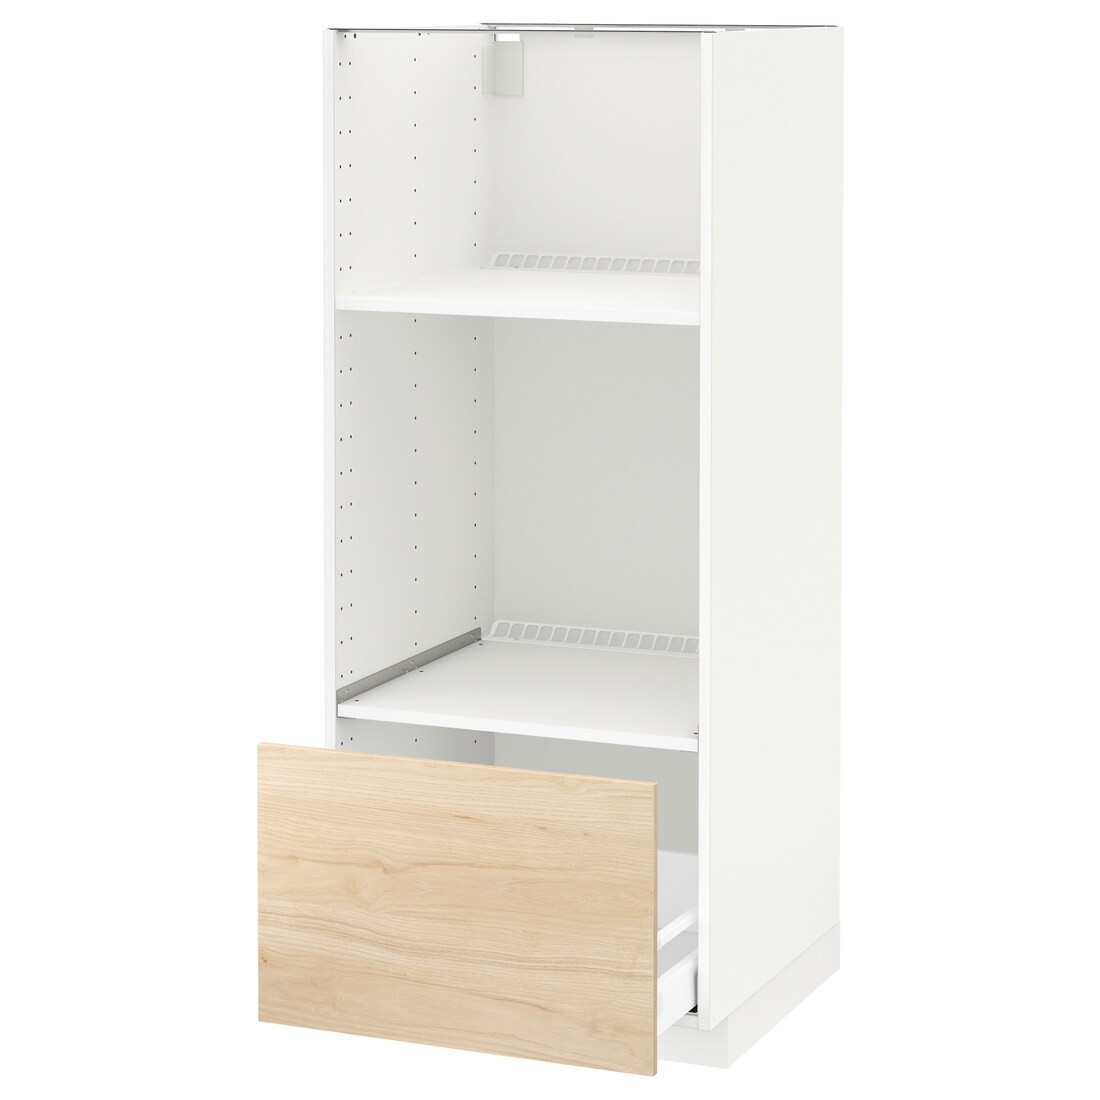 IKEA METOD МЕТОД / MAXIMERA МАКСИМЕРА Высокий шкаф для духовки / СВЧ, белый / Askersund узор светлый ясень, 60x60x140 см 99204357 992.043.57